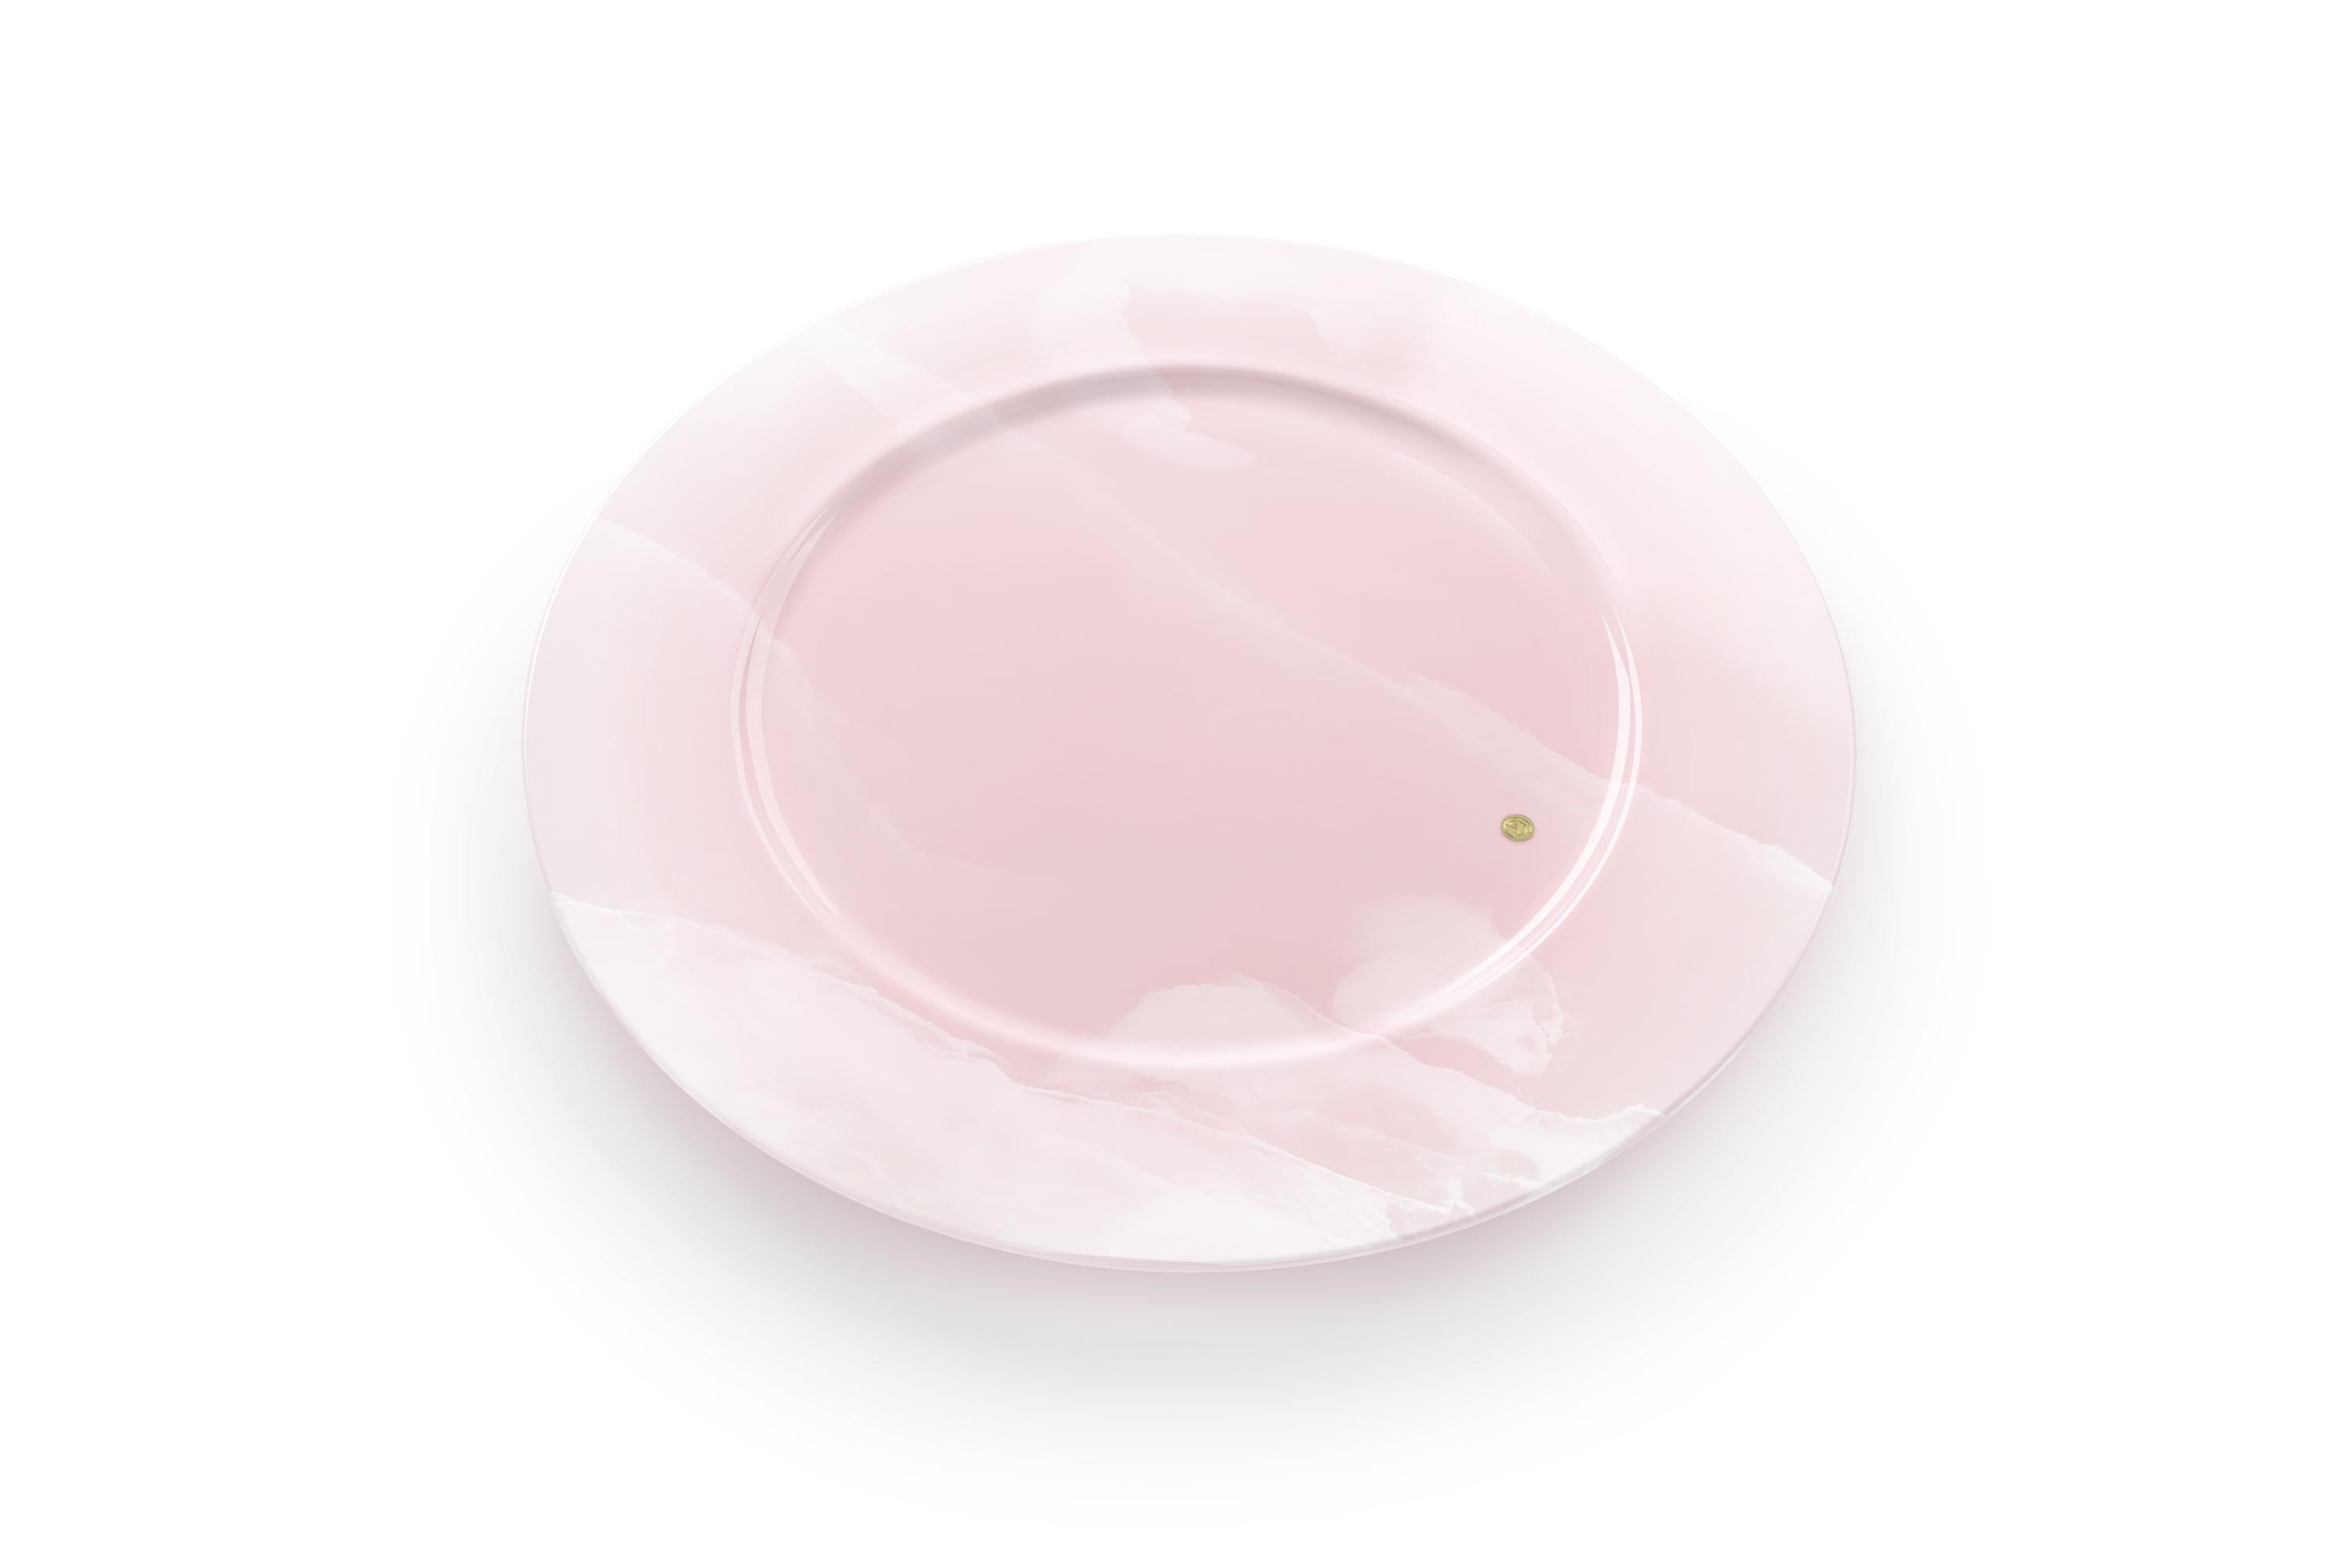 Set de 4 plateaux de table en onyx rose, sculptés à la main. Utilisation multiple en tant qu'assiettes de présentation, assiettes, plateaux et plateaux de service. La finition polie souligne la transparence de l'onyx, ce qui en fait un objet très